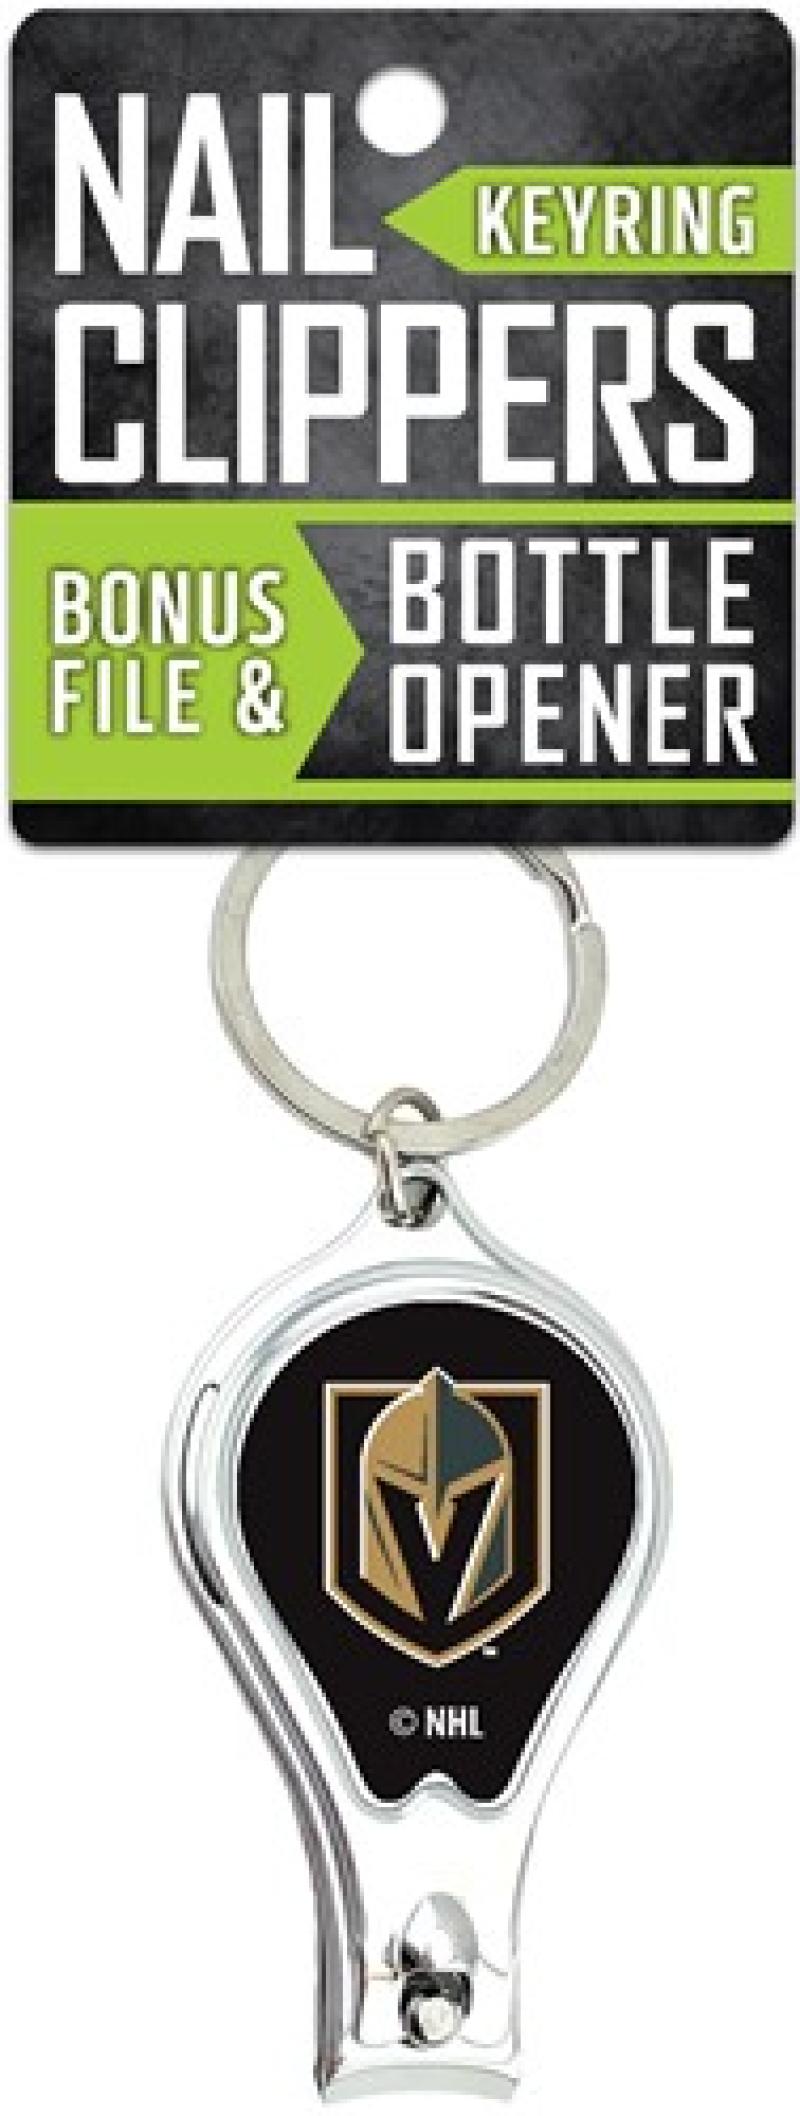 Vegas Golden Knights Nail Clipper Keyring w/Bonus File & Bottle Opener Image 1